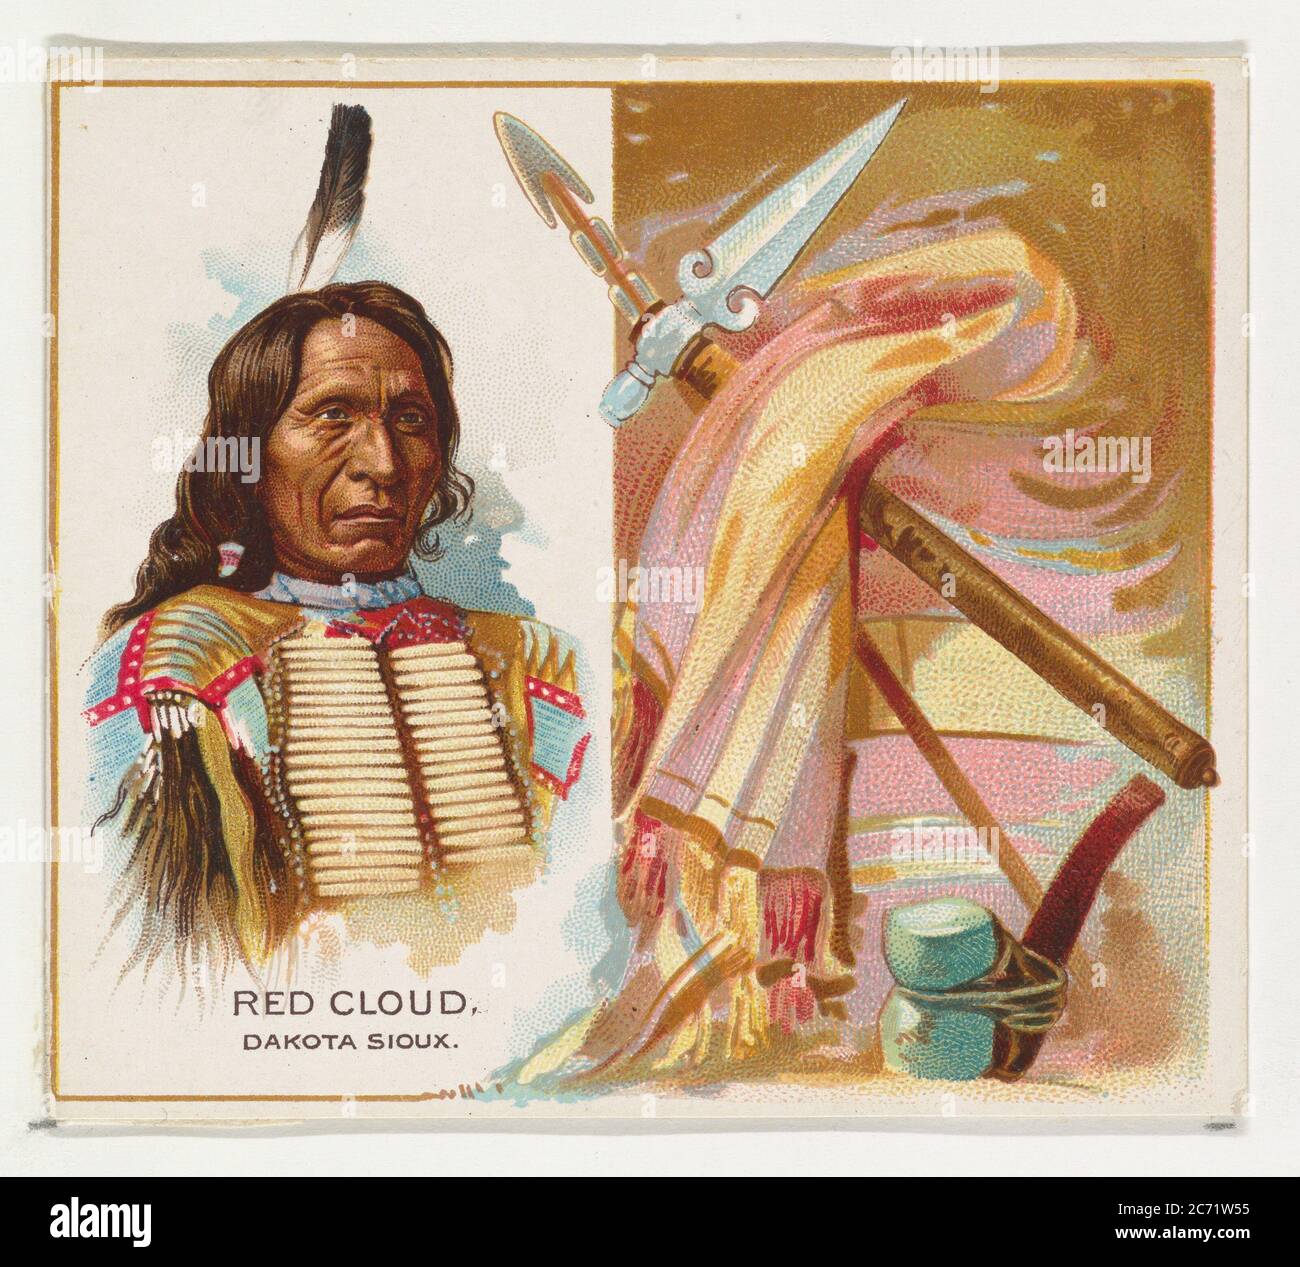 Red Cloud, Dakota Sioux, de la série des chefs indiens américains (N36) pour Allen & amp; Ginter cigarettes, 1888. Banque D'Images